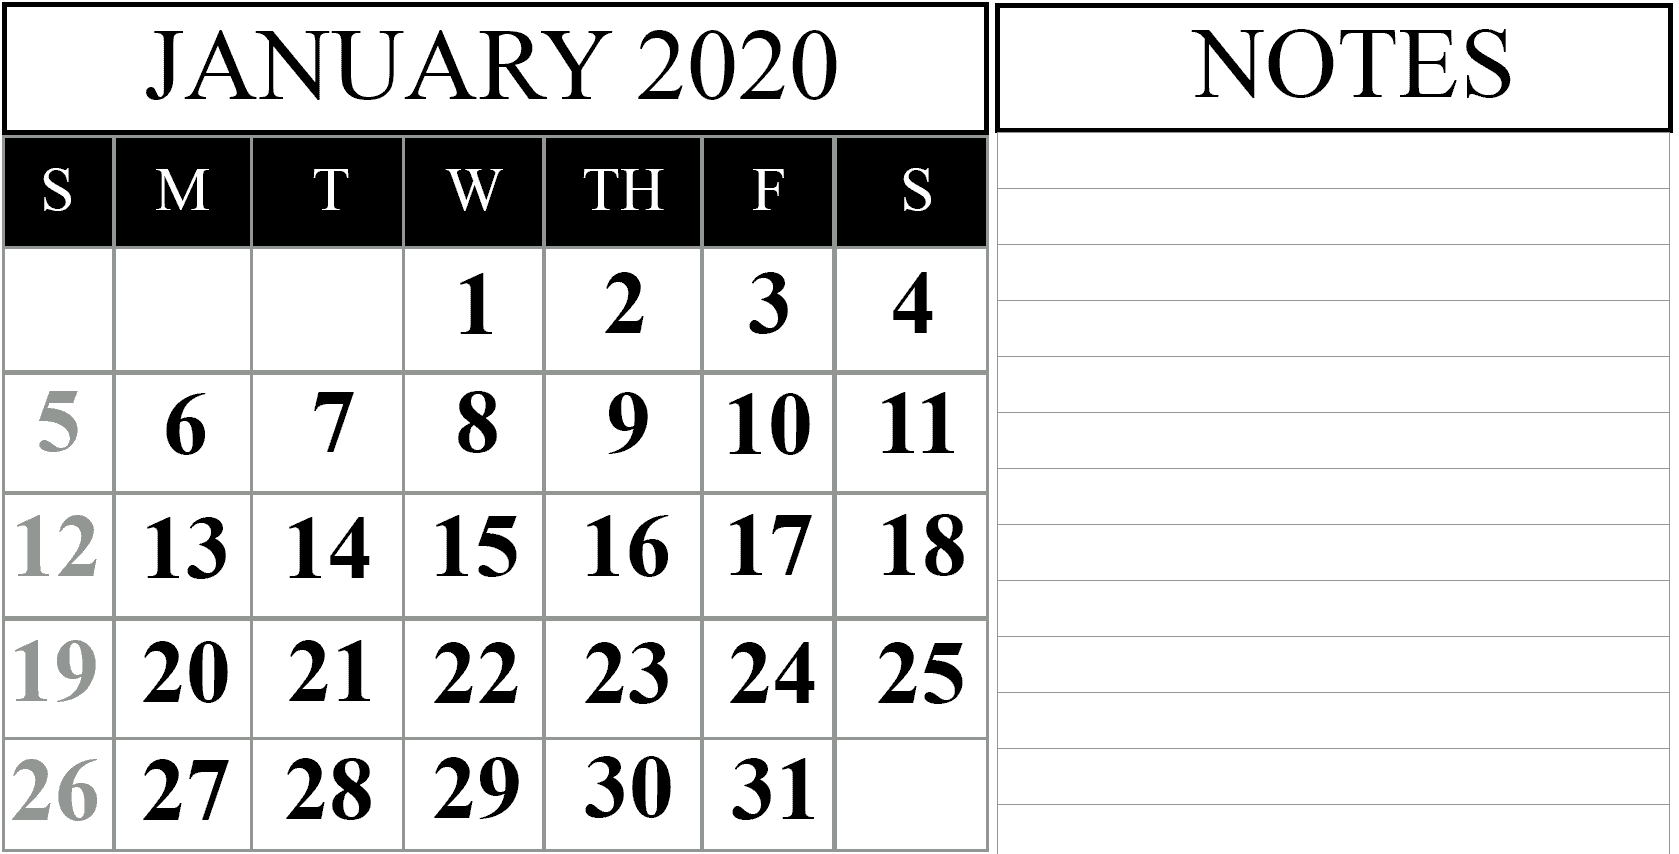 January 2020 Calendar printable, January 2020 editable calendar